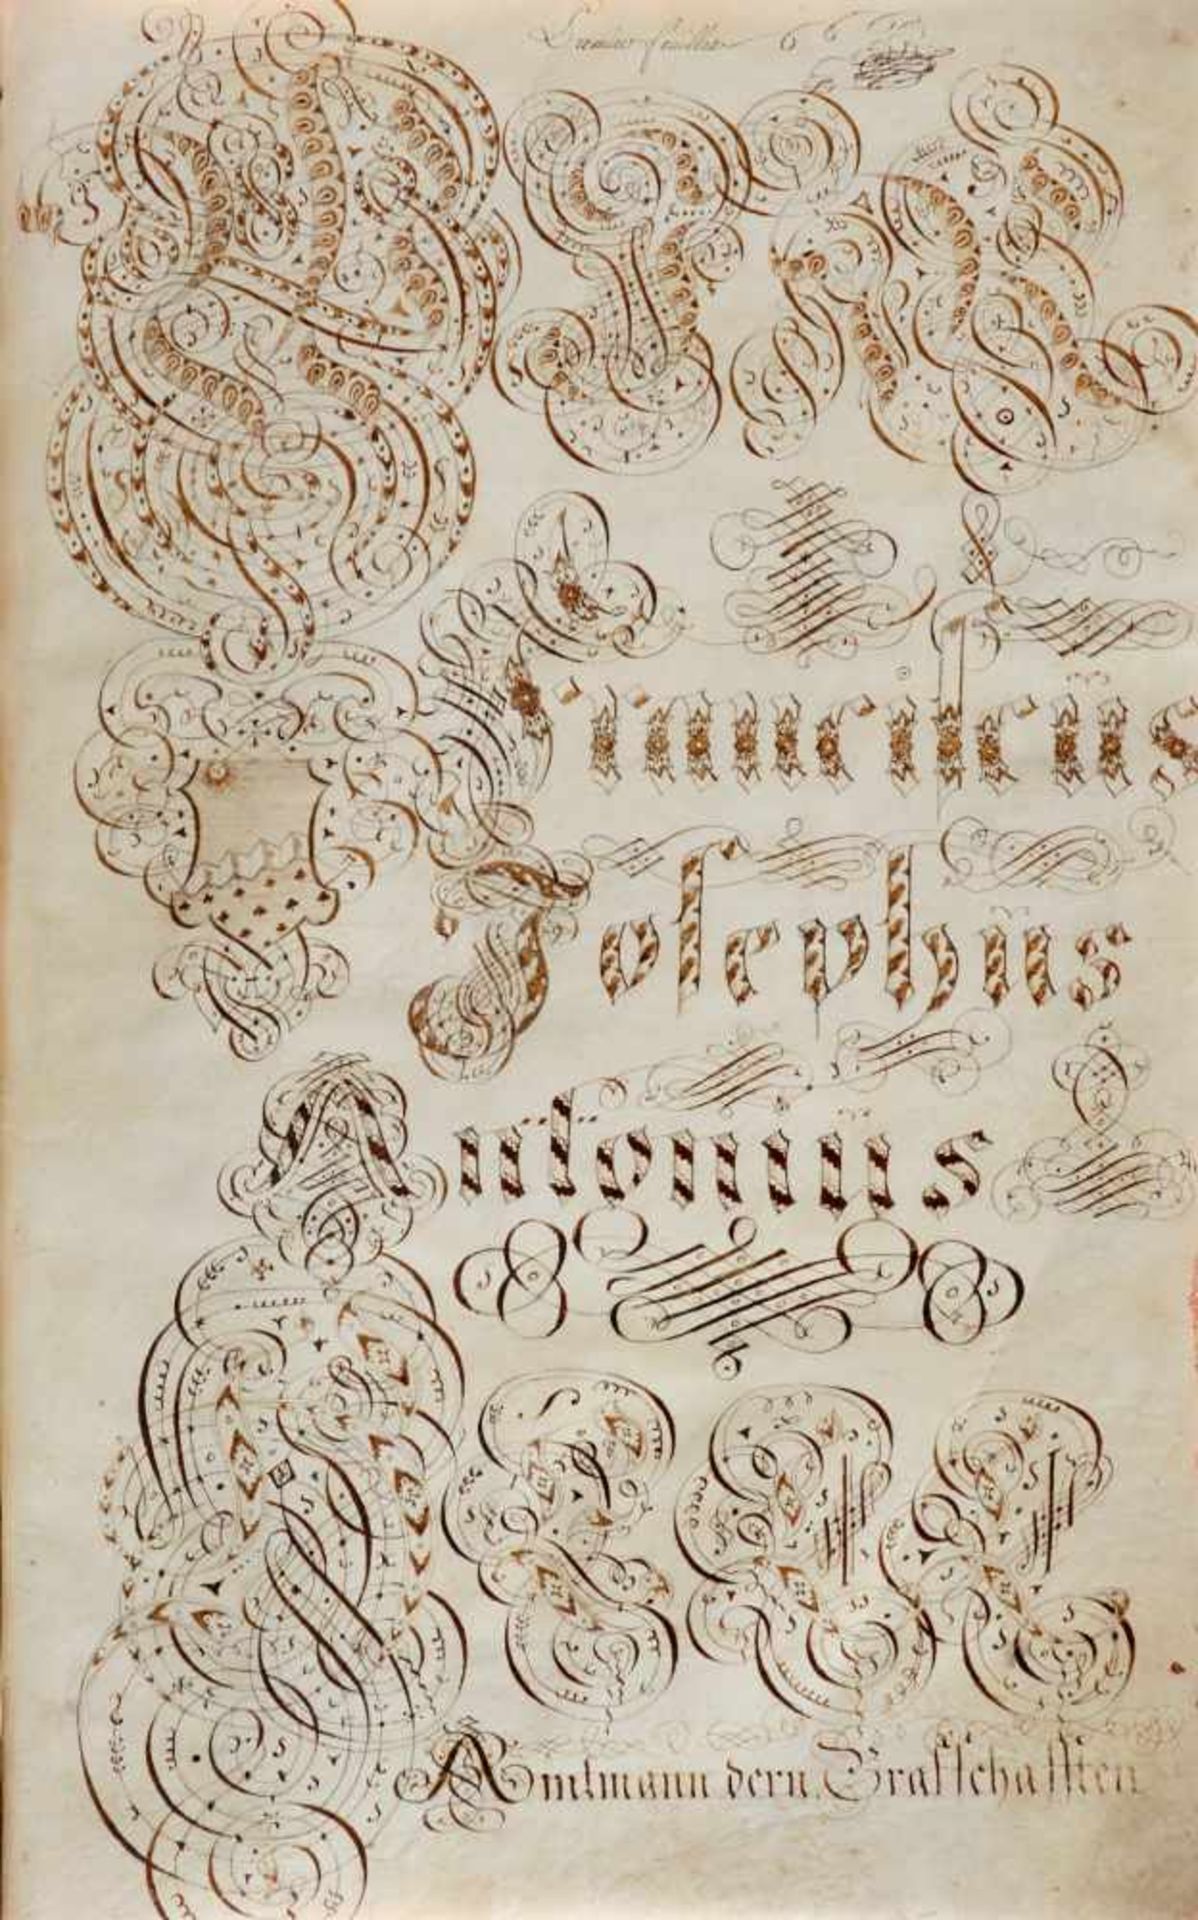 "St. Johannser Commenthurey Terain von Basel zu Helfrantzkirch De Anno 1770".Deutsche Handschrift - Bild 6 aus 6